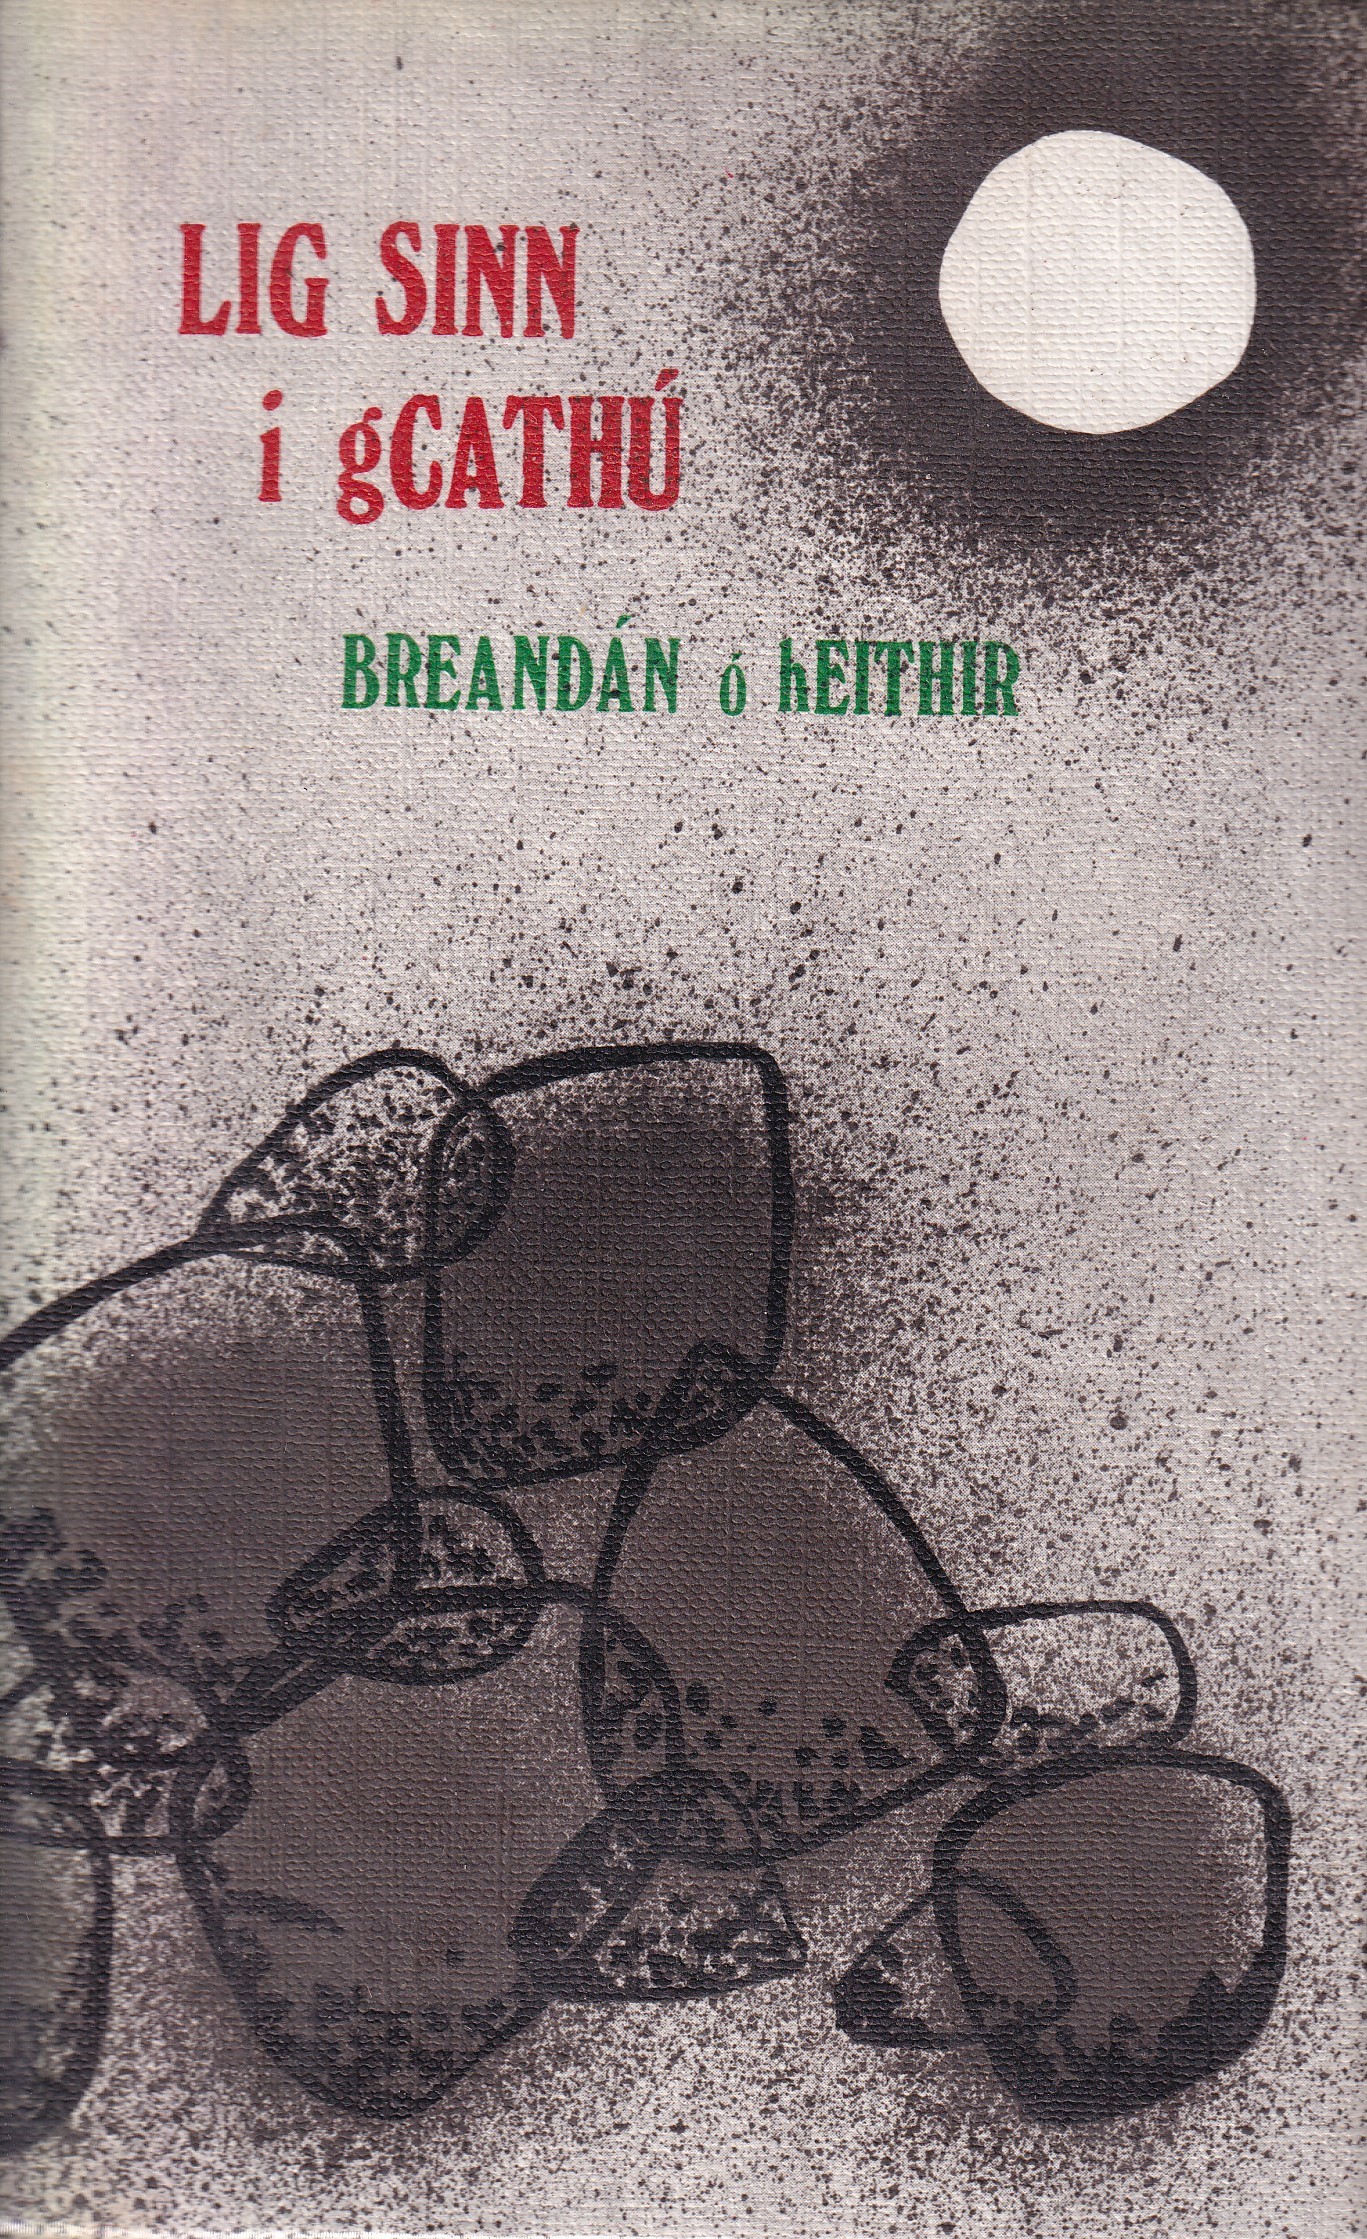 Lig Sin i gCathú by Breandán Ó Heithir